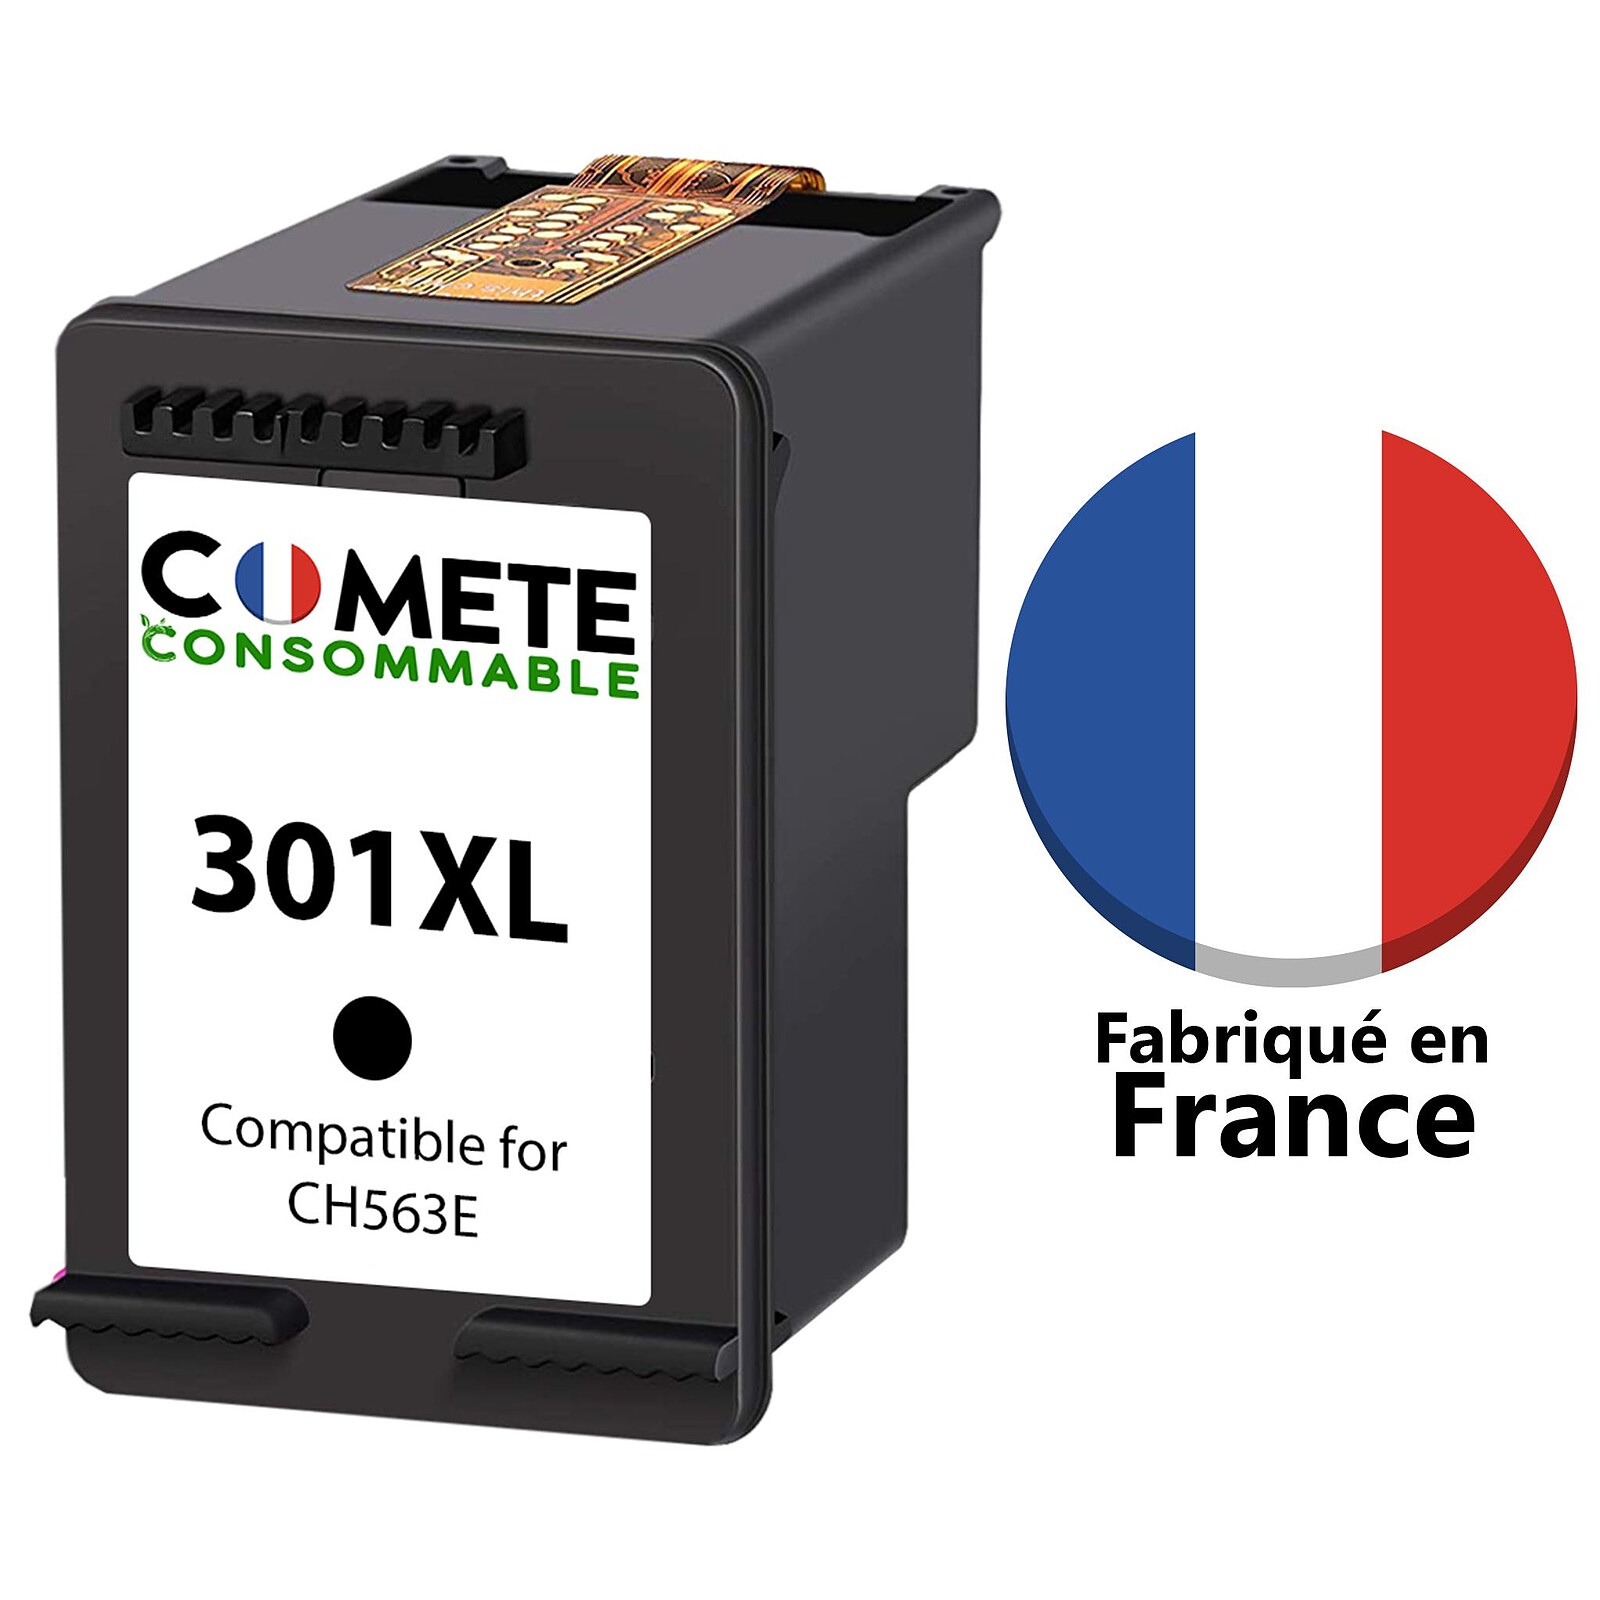 1 cartouche Made in France compatible HP 301 XL 301XL Noir - Cartouche  imprimante - LDLC